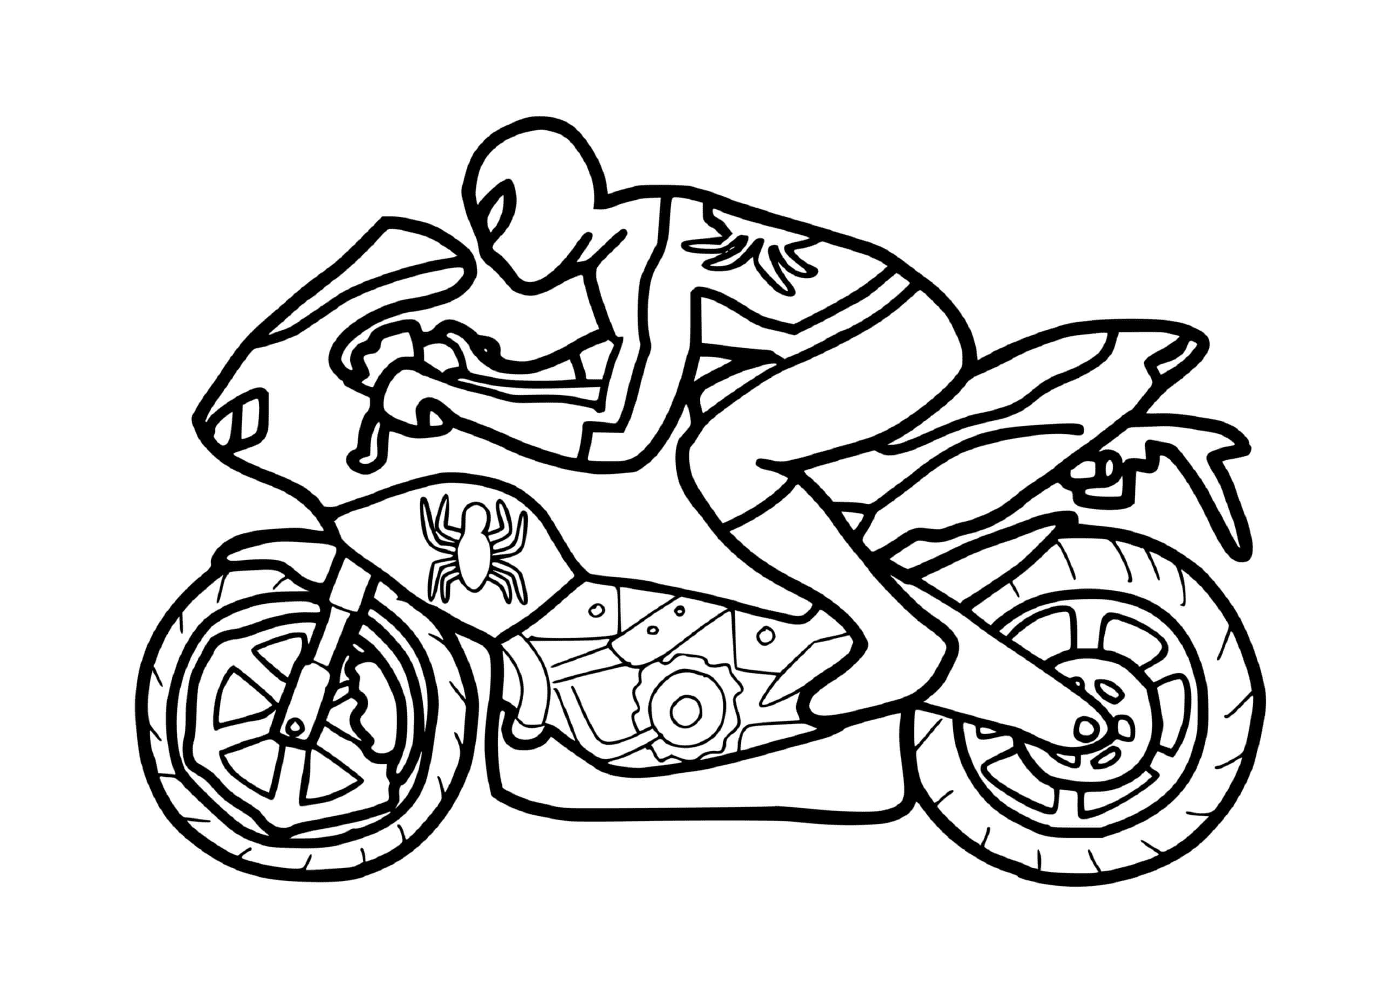  Moto Homem-Aranha em velocidade máxima 